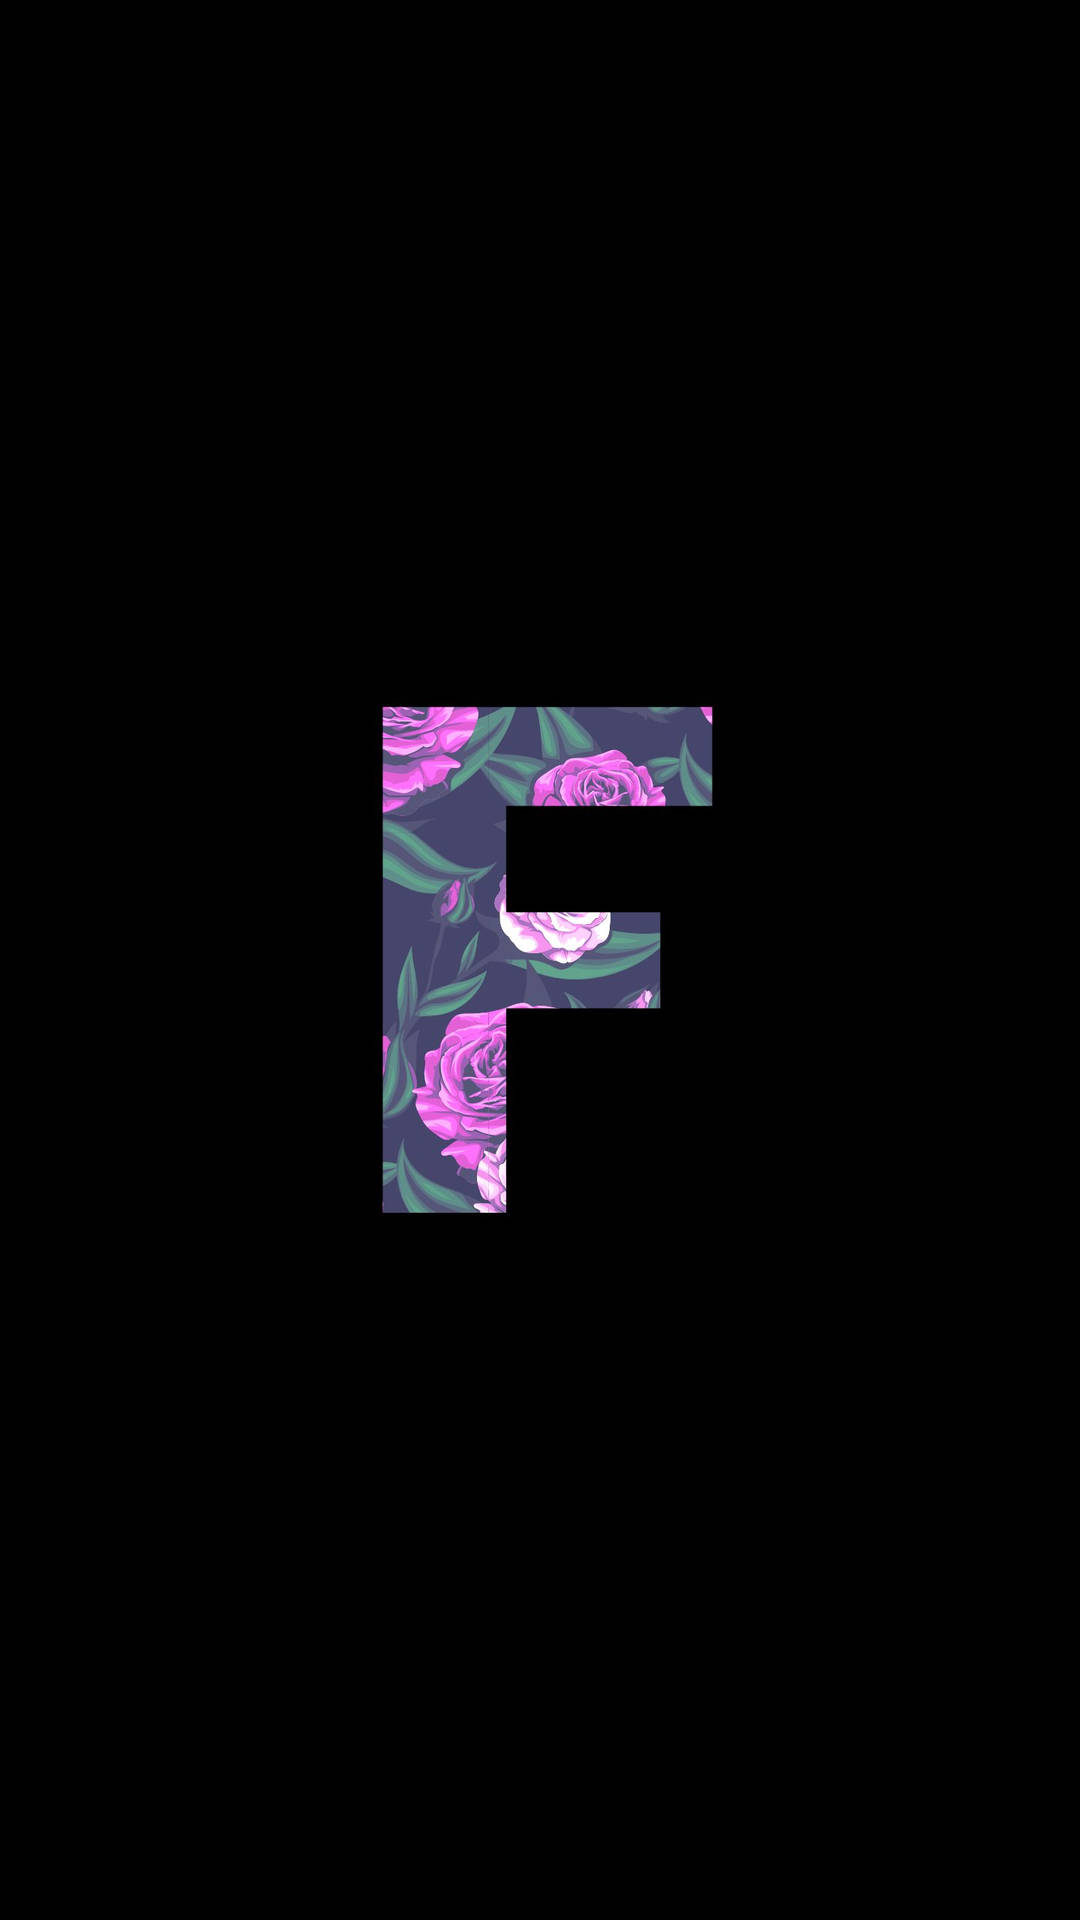 Floral ‘f’ Letter Design Against A Dark Background